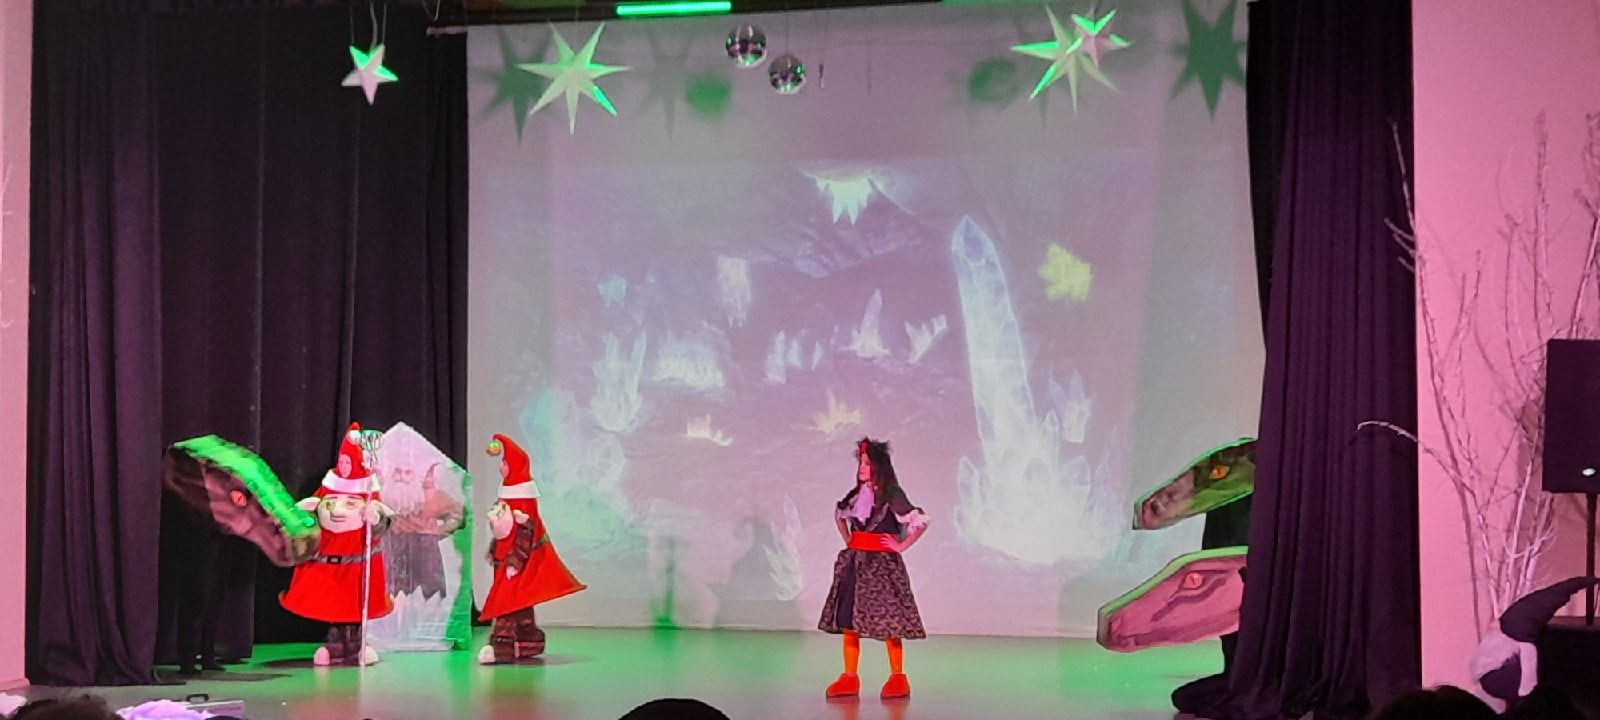 В Молодежном центре для детворы показали новогоднее представление